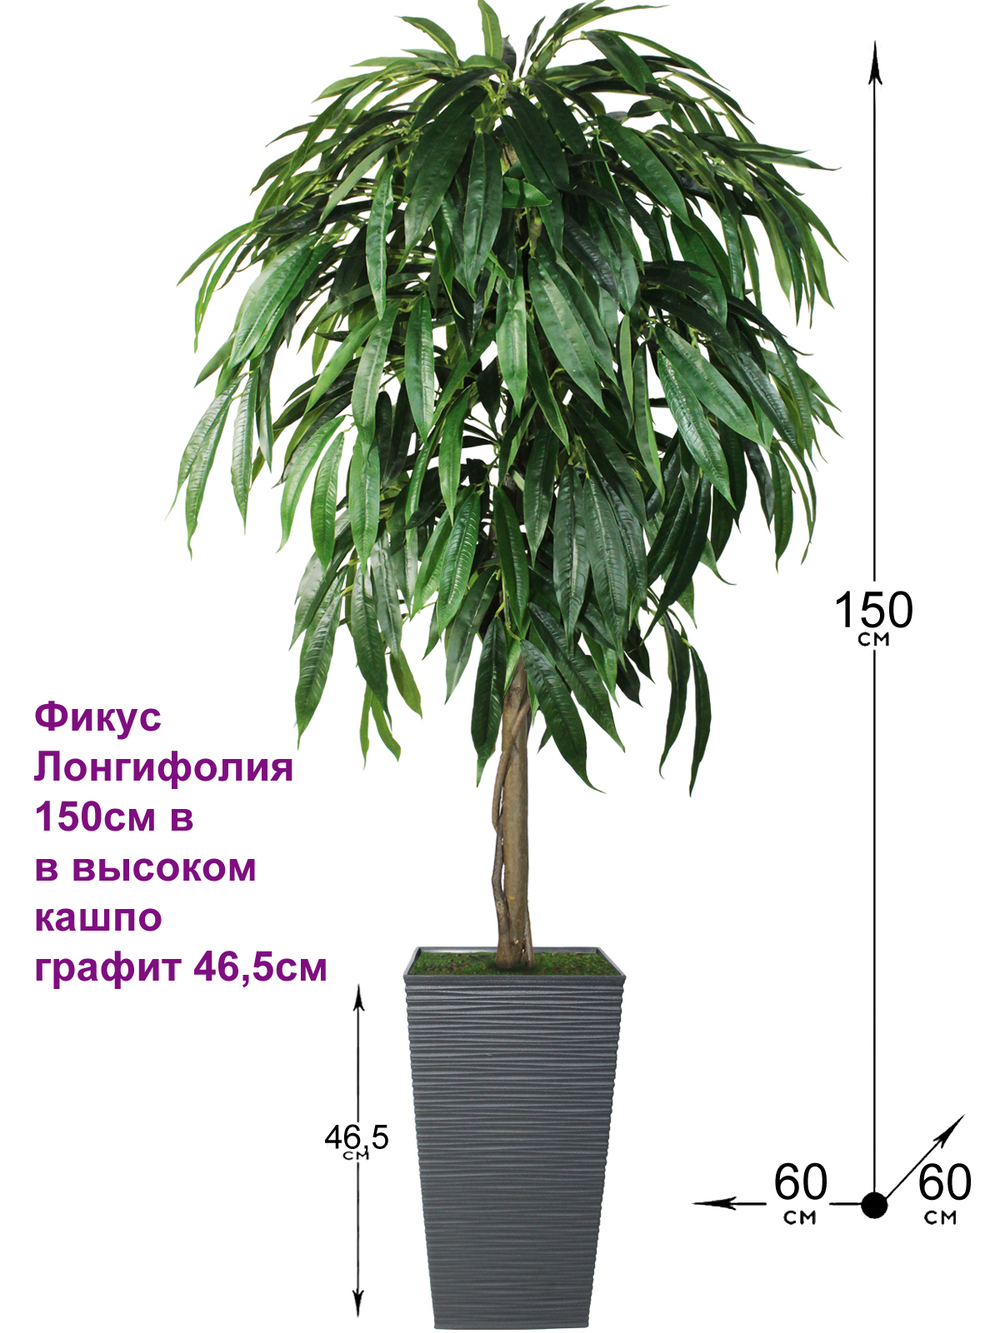 Искусственное дерево Фикус Лонгифолия 150 см в высоком кашпо графит 46 см